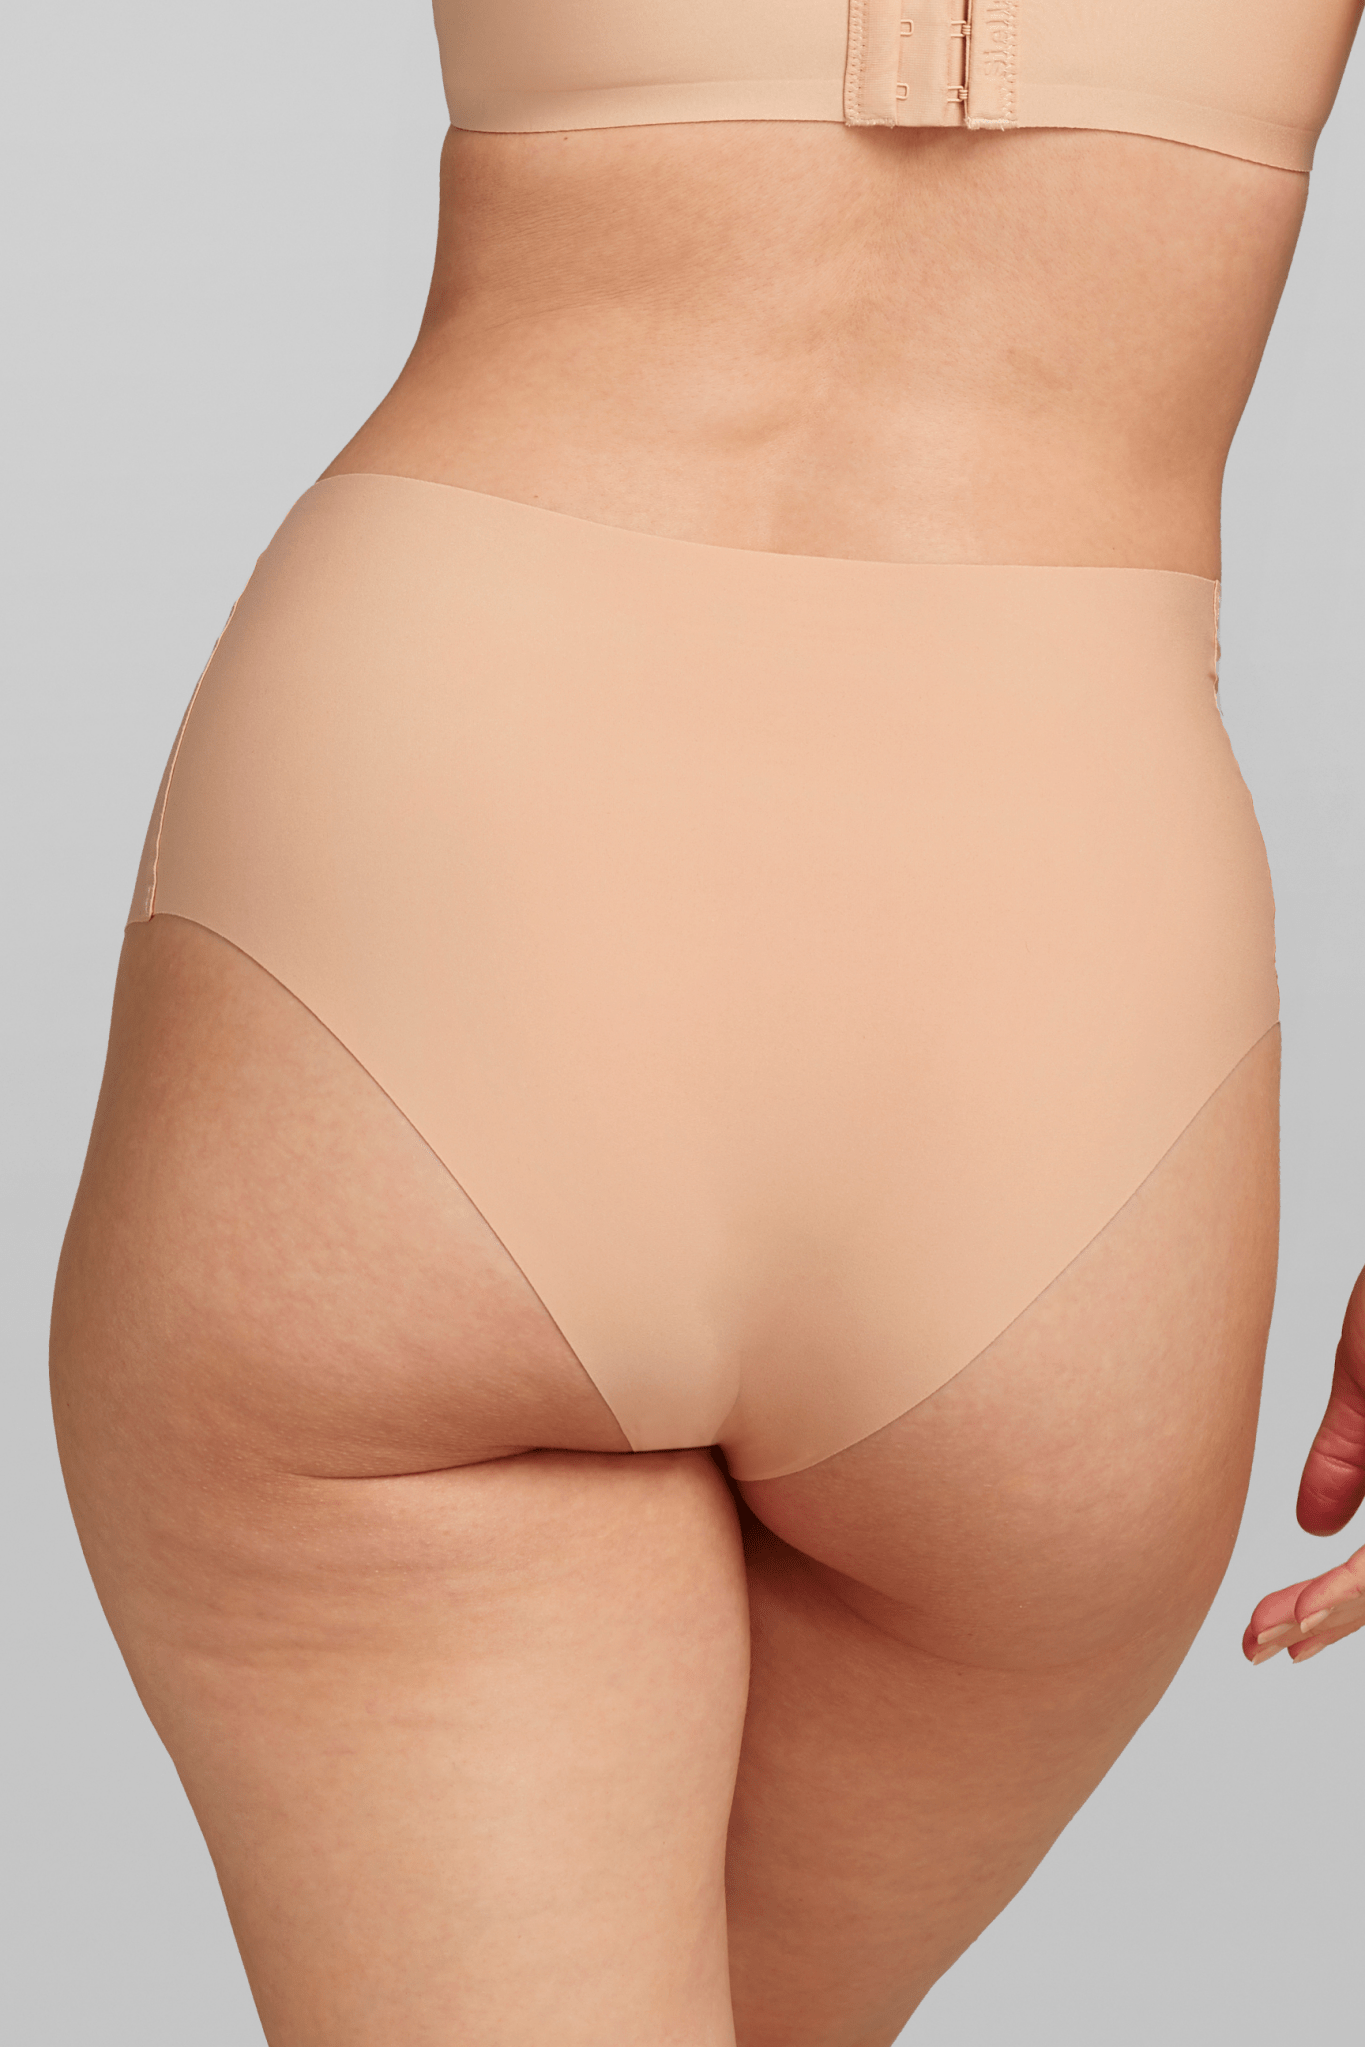 ACPLK Women Waist Cincher Girdle Thong Shapewear Tummy Control